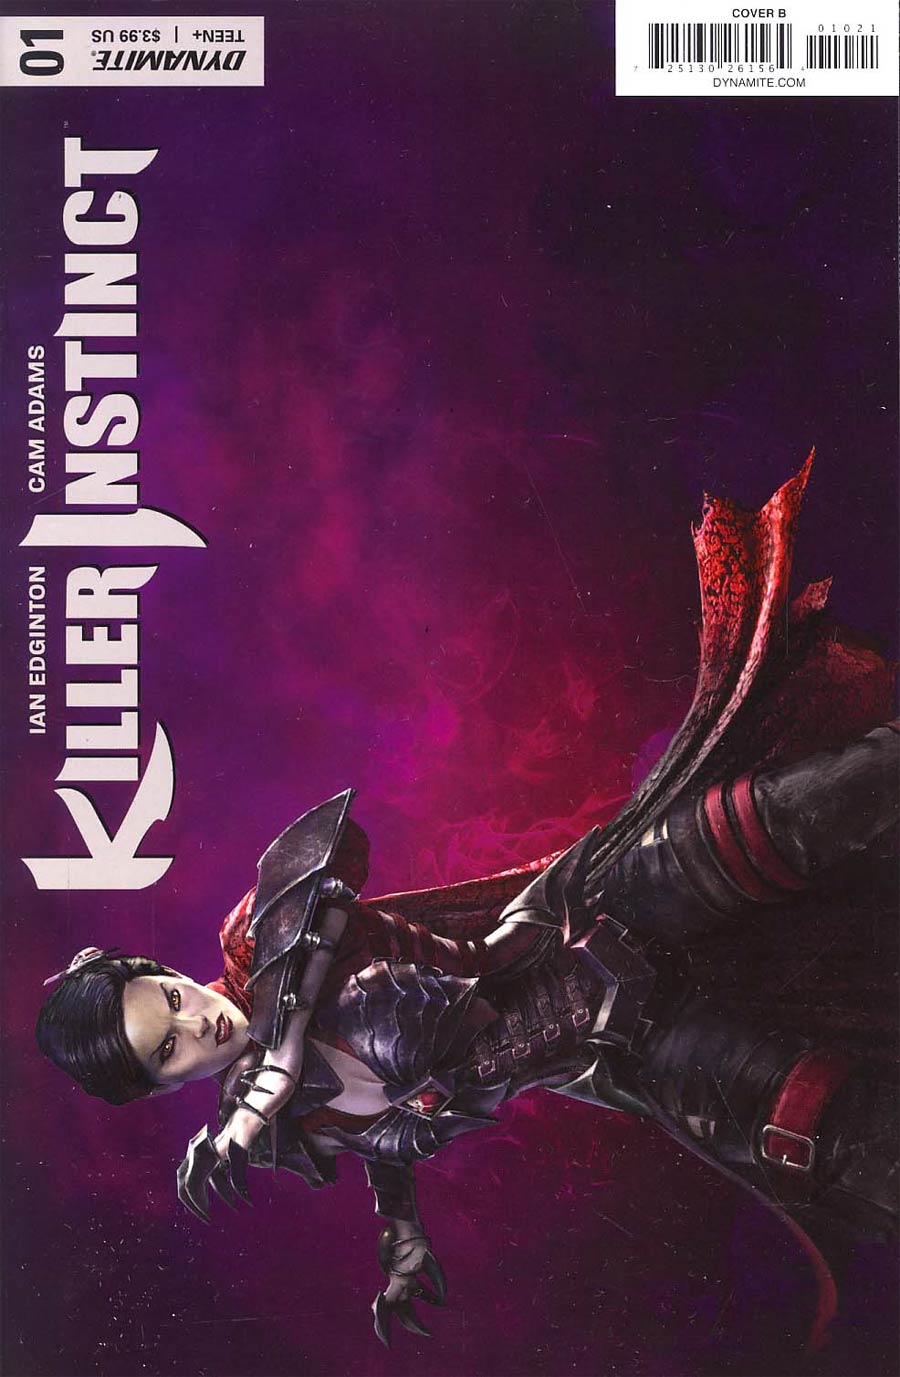 Killer Instinct Vol 2 #1 Cover B Variant Mira Gameplay Cover